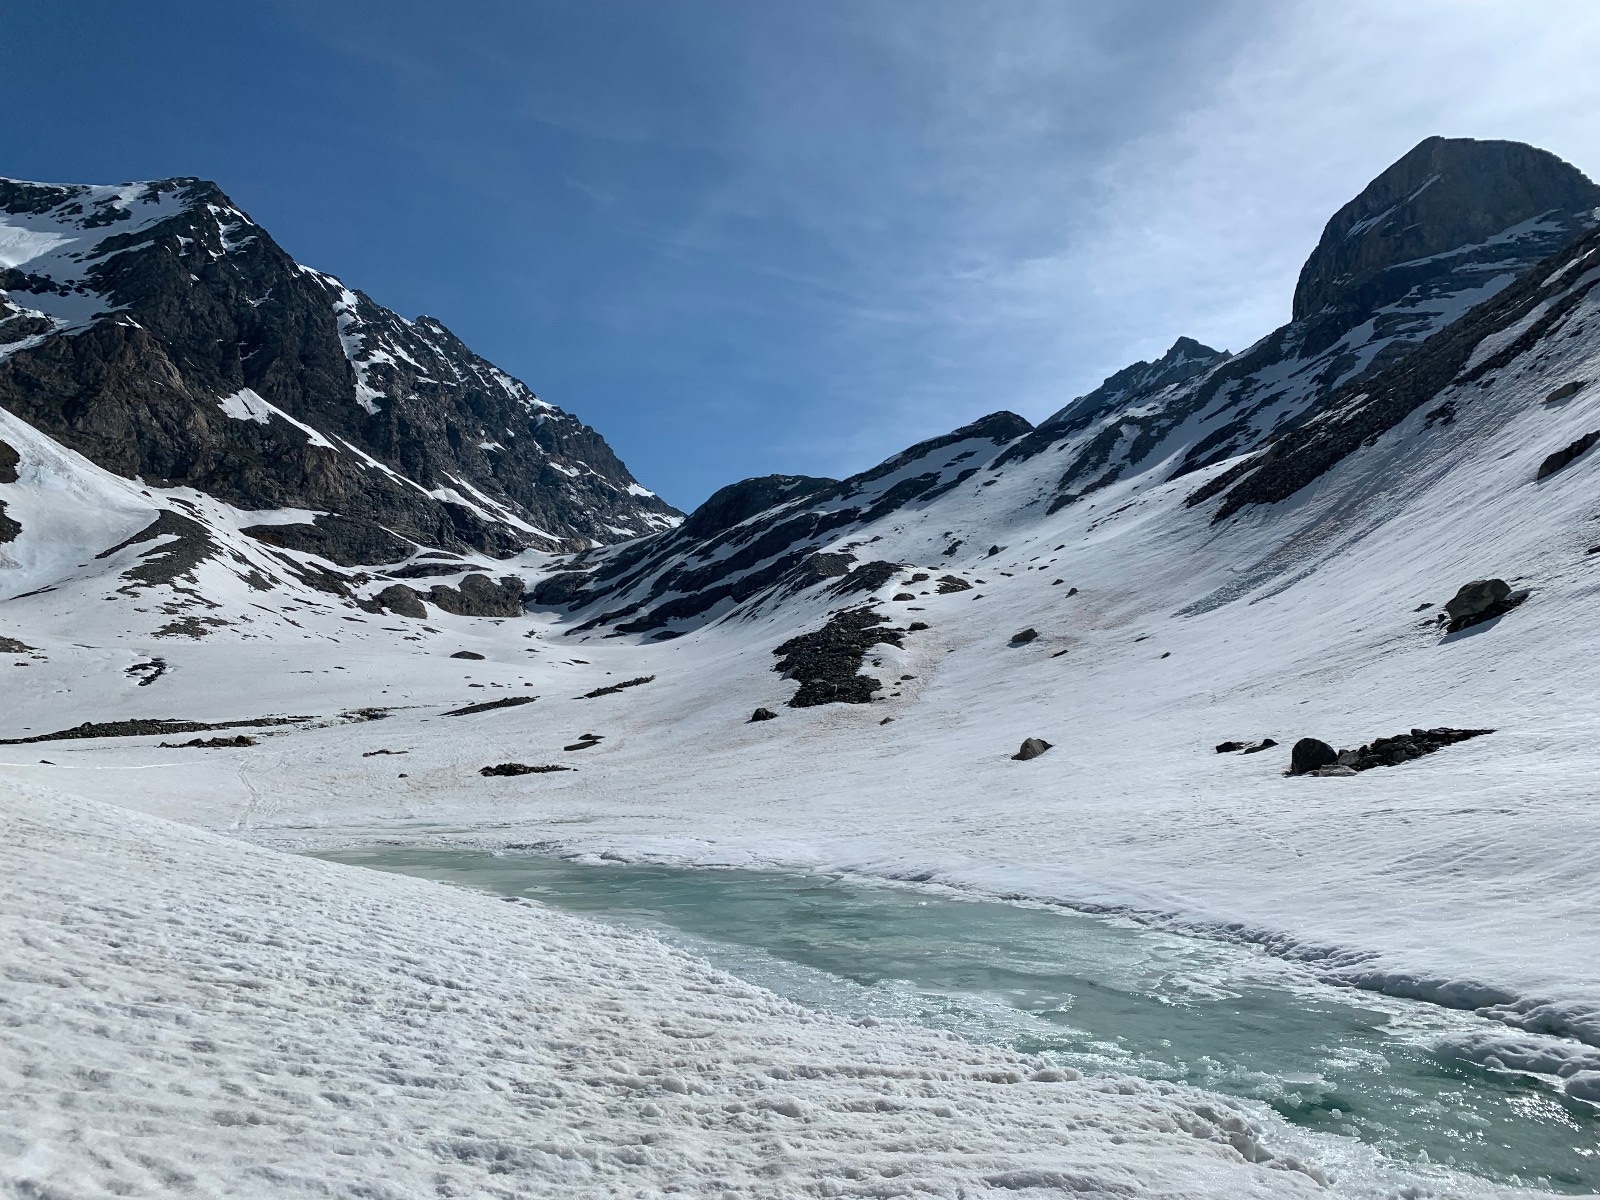 Vers 2700m, vue sur le 2e verrou donnant sur le glacier, ça passe à gauche